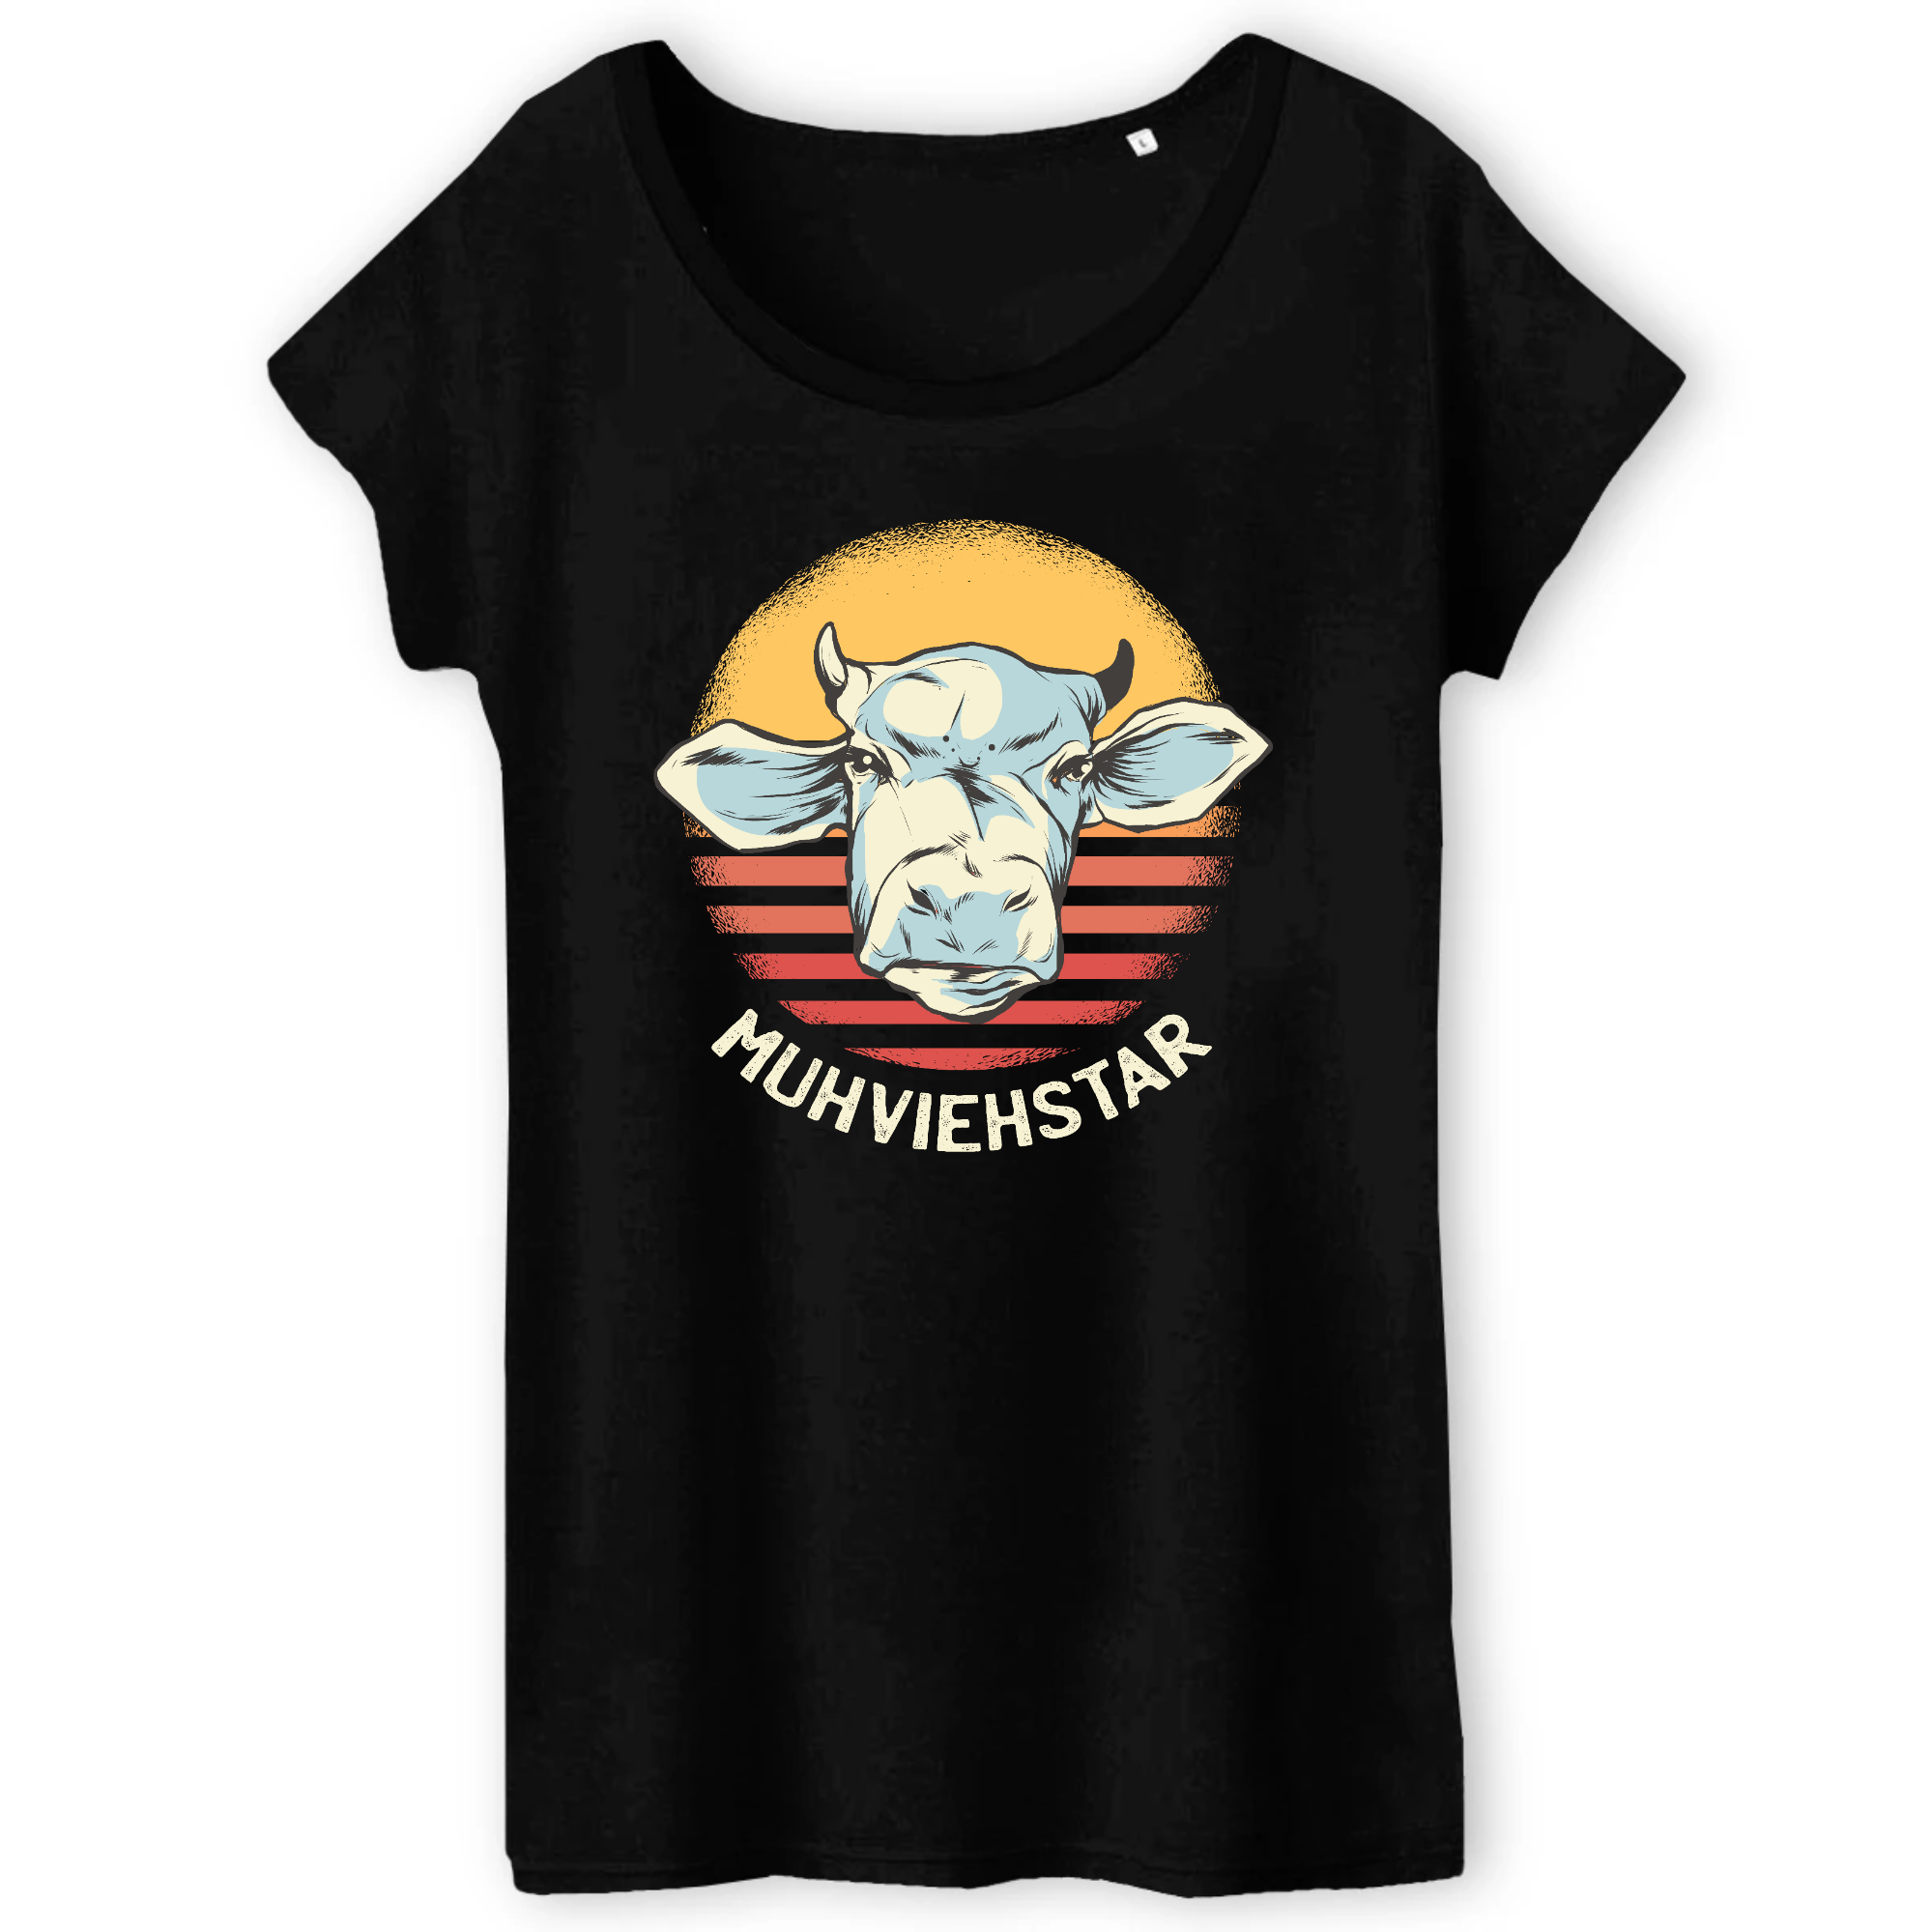 T-Shirt-Bio-Muhviehstar - Ladies